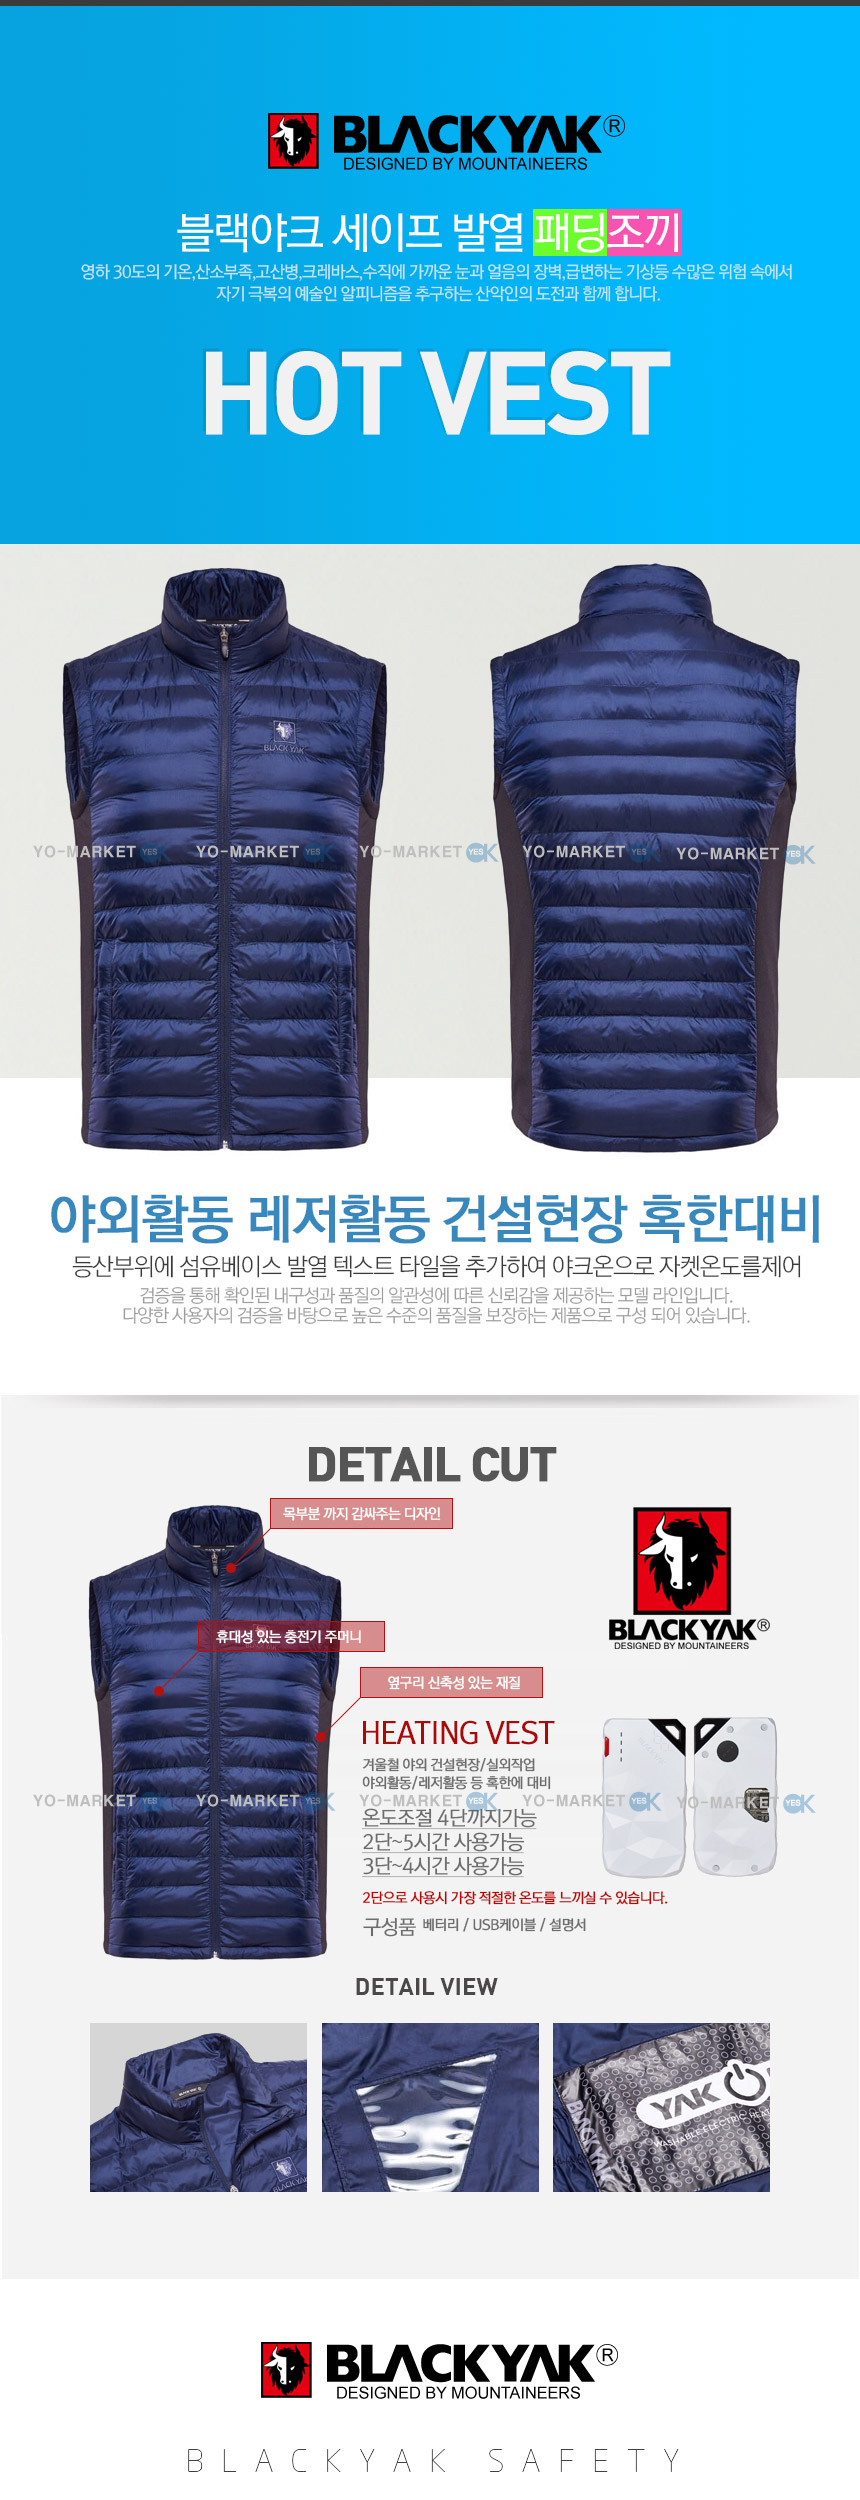 blackyak hot vest (1).jpg